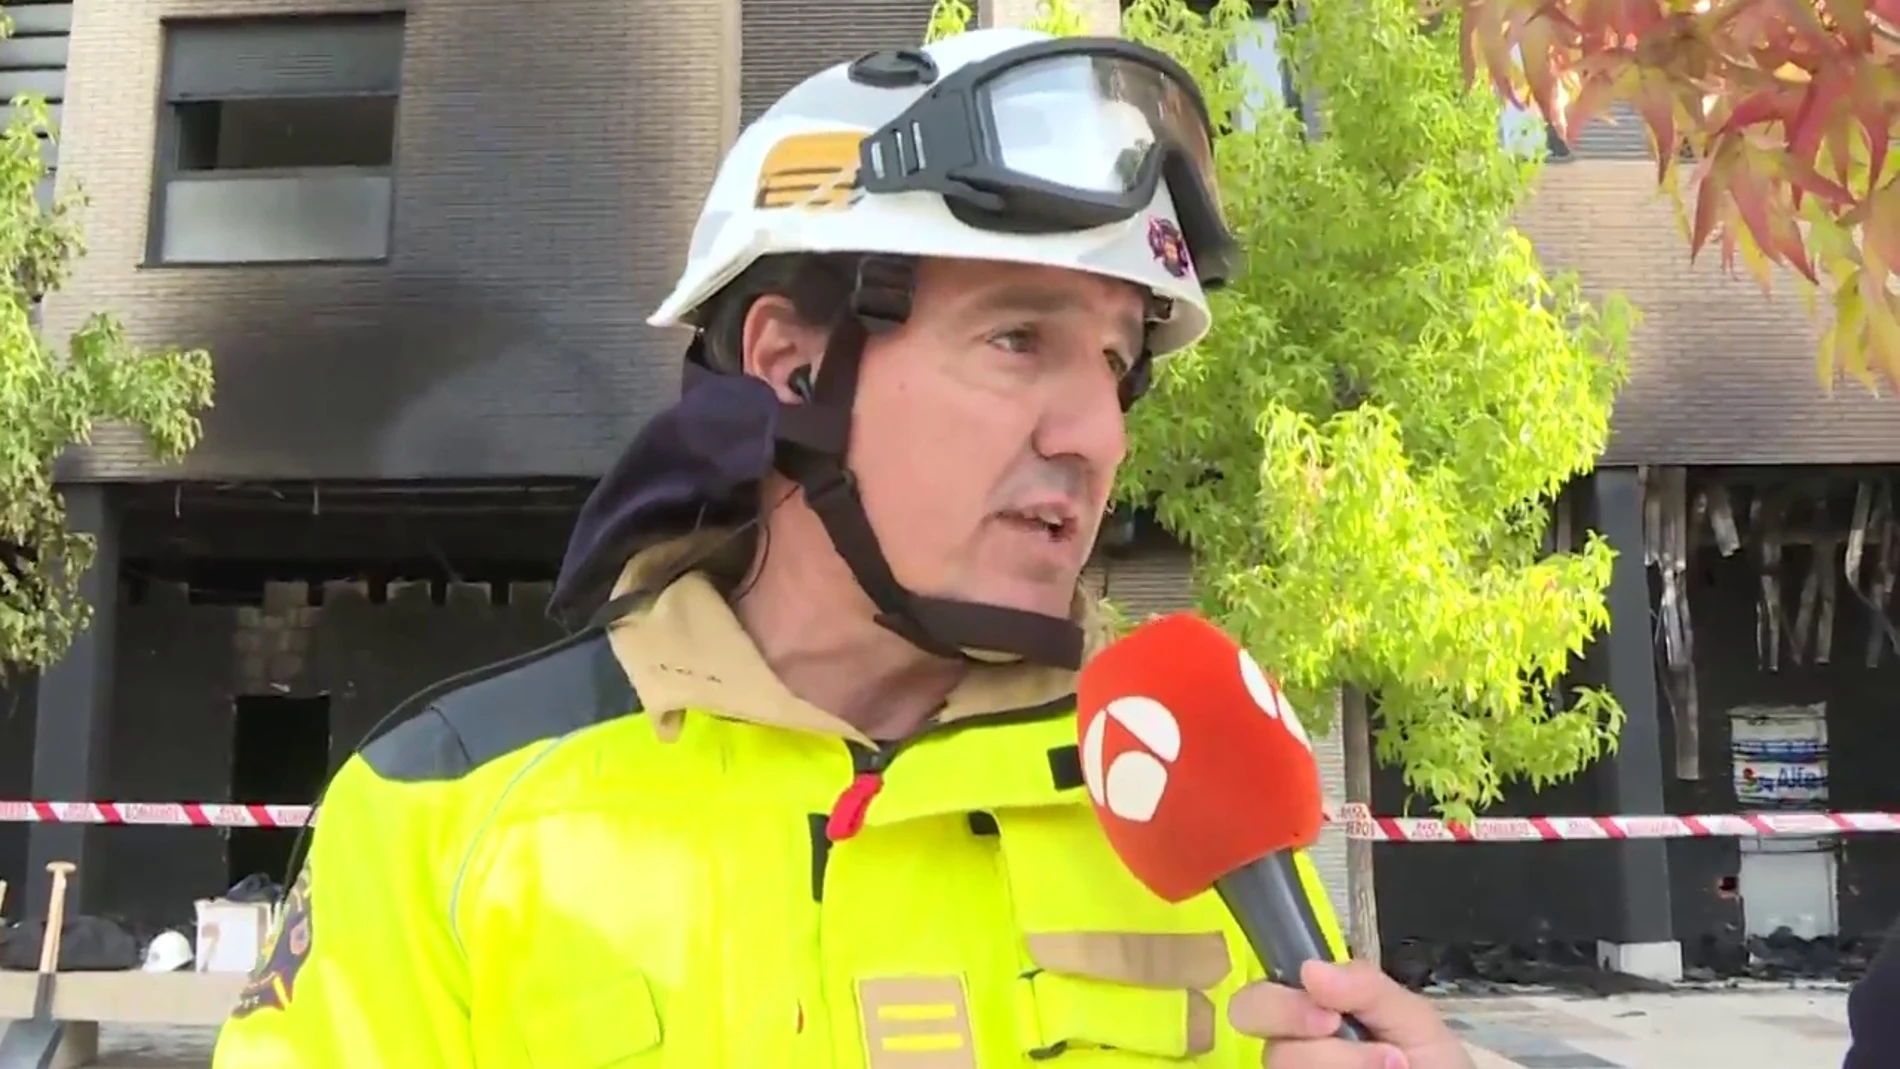 El testimonio del Jefe de Bomberos, Raúl Esteban, sobre la explosión de Alcorcón en Espejo Público